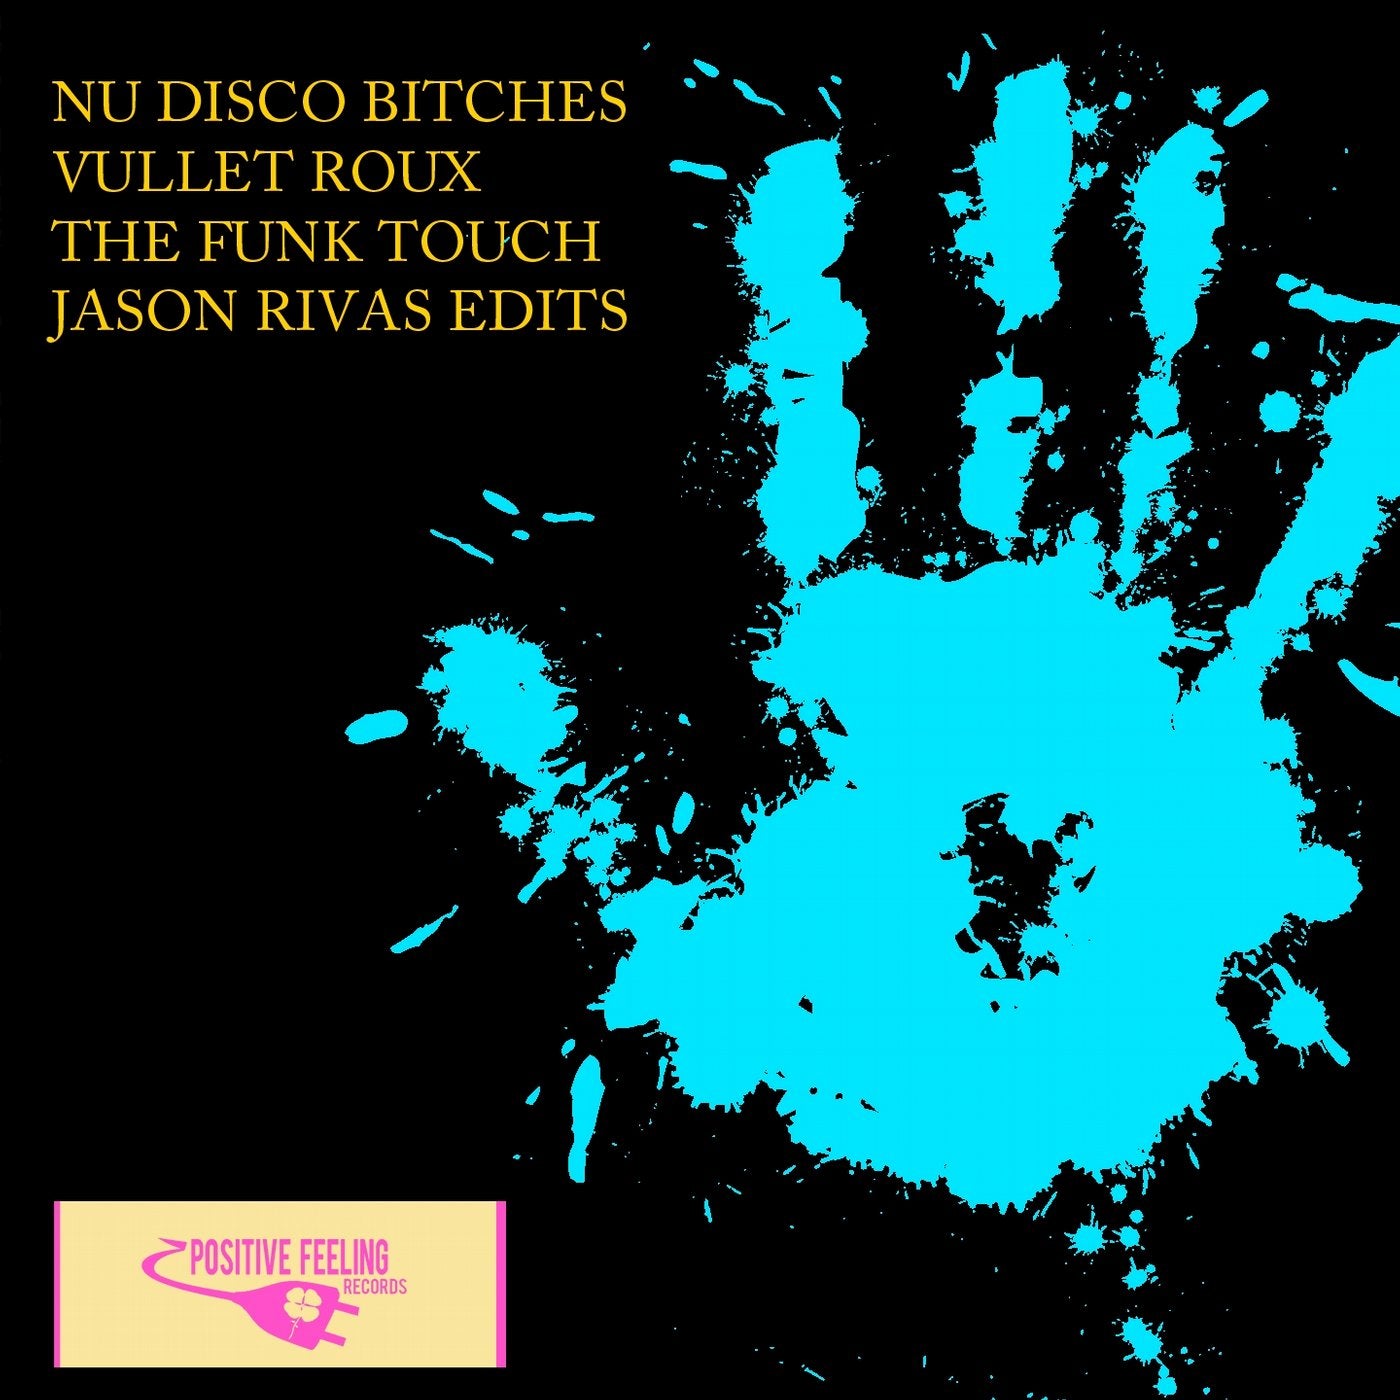 The Funk Touch (Jason Rivas Edits)